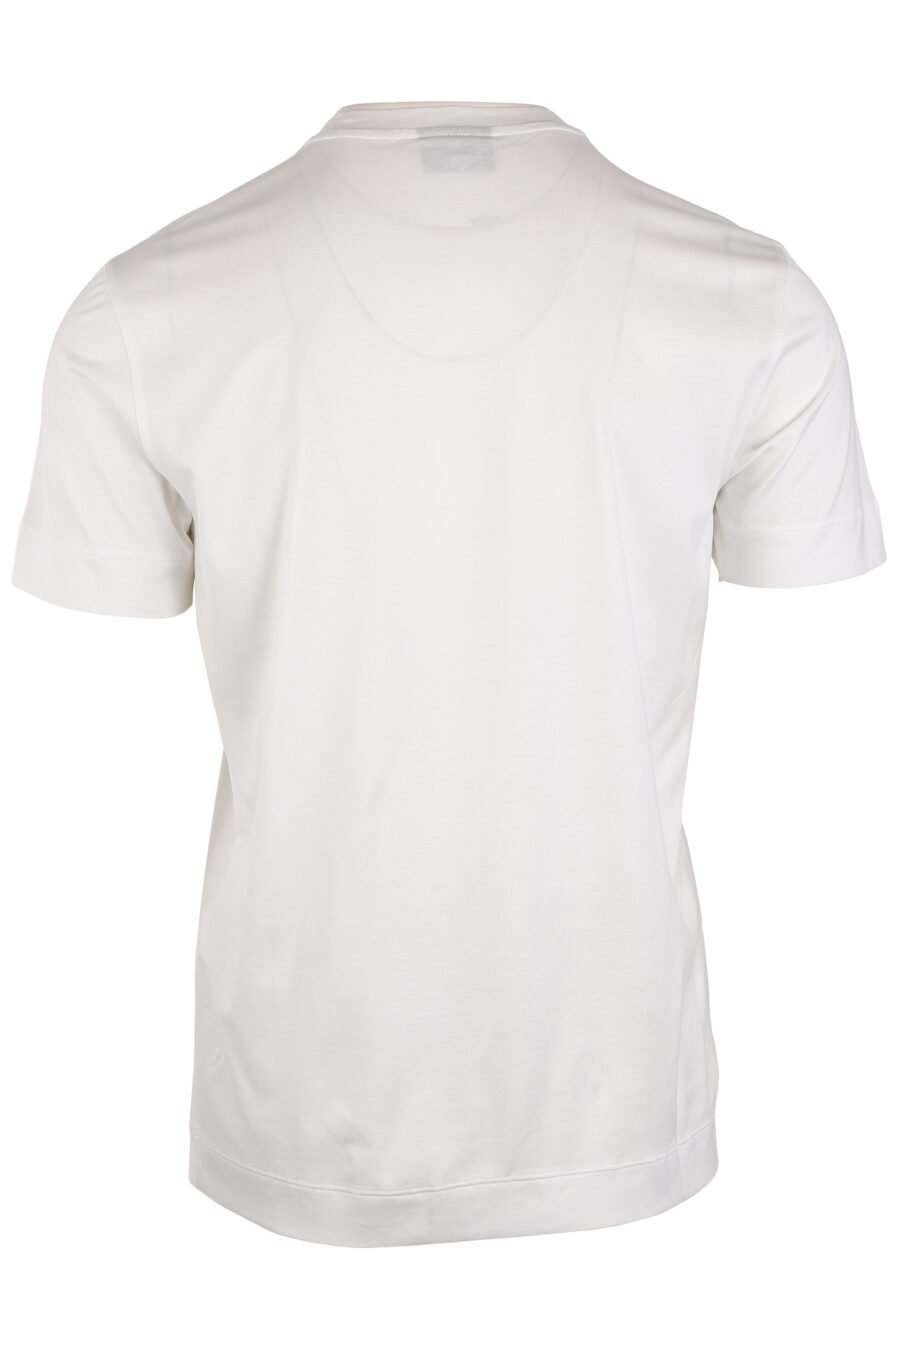 Camiseta blanca con minilogo águila en degradé azul - IMG 4055